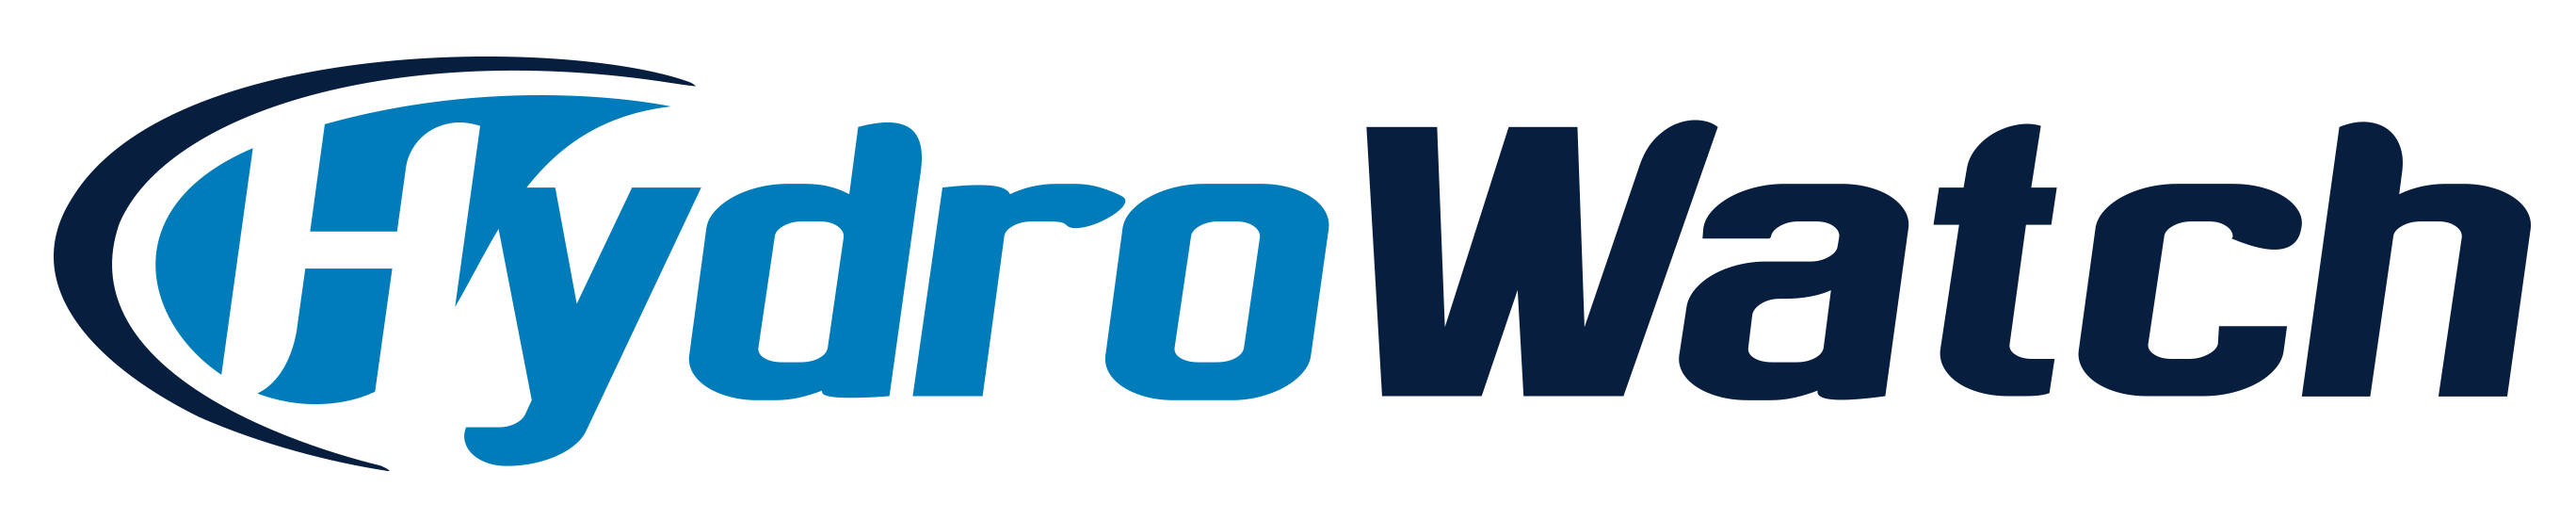 Hydrowatch logo